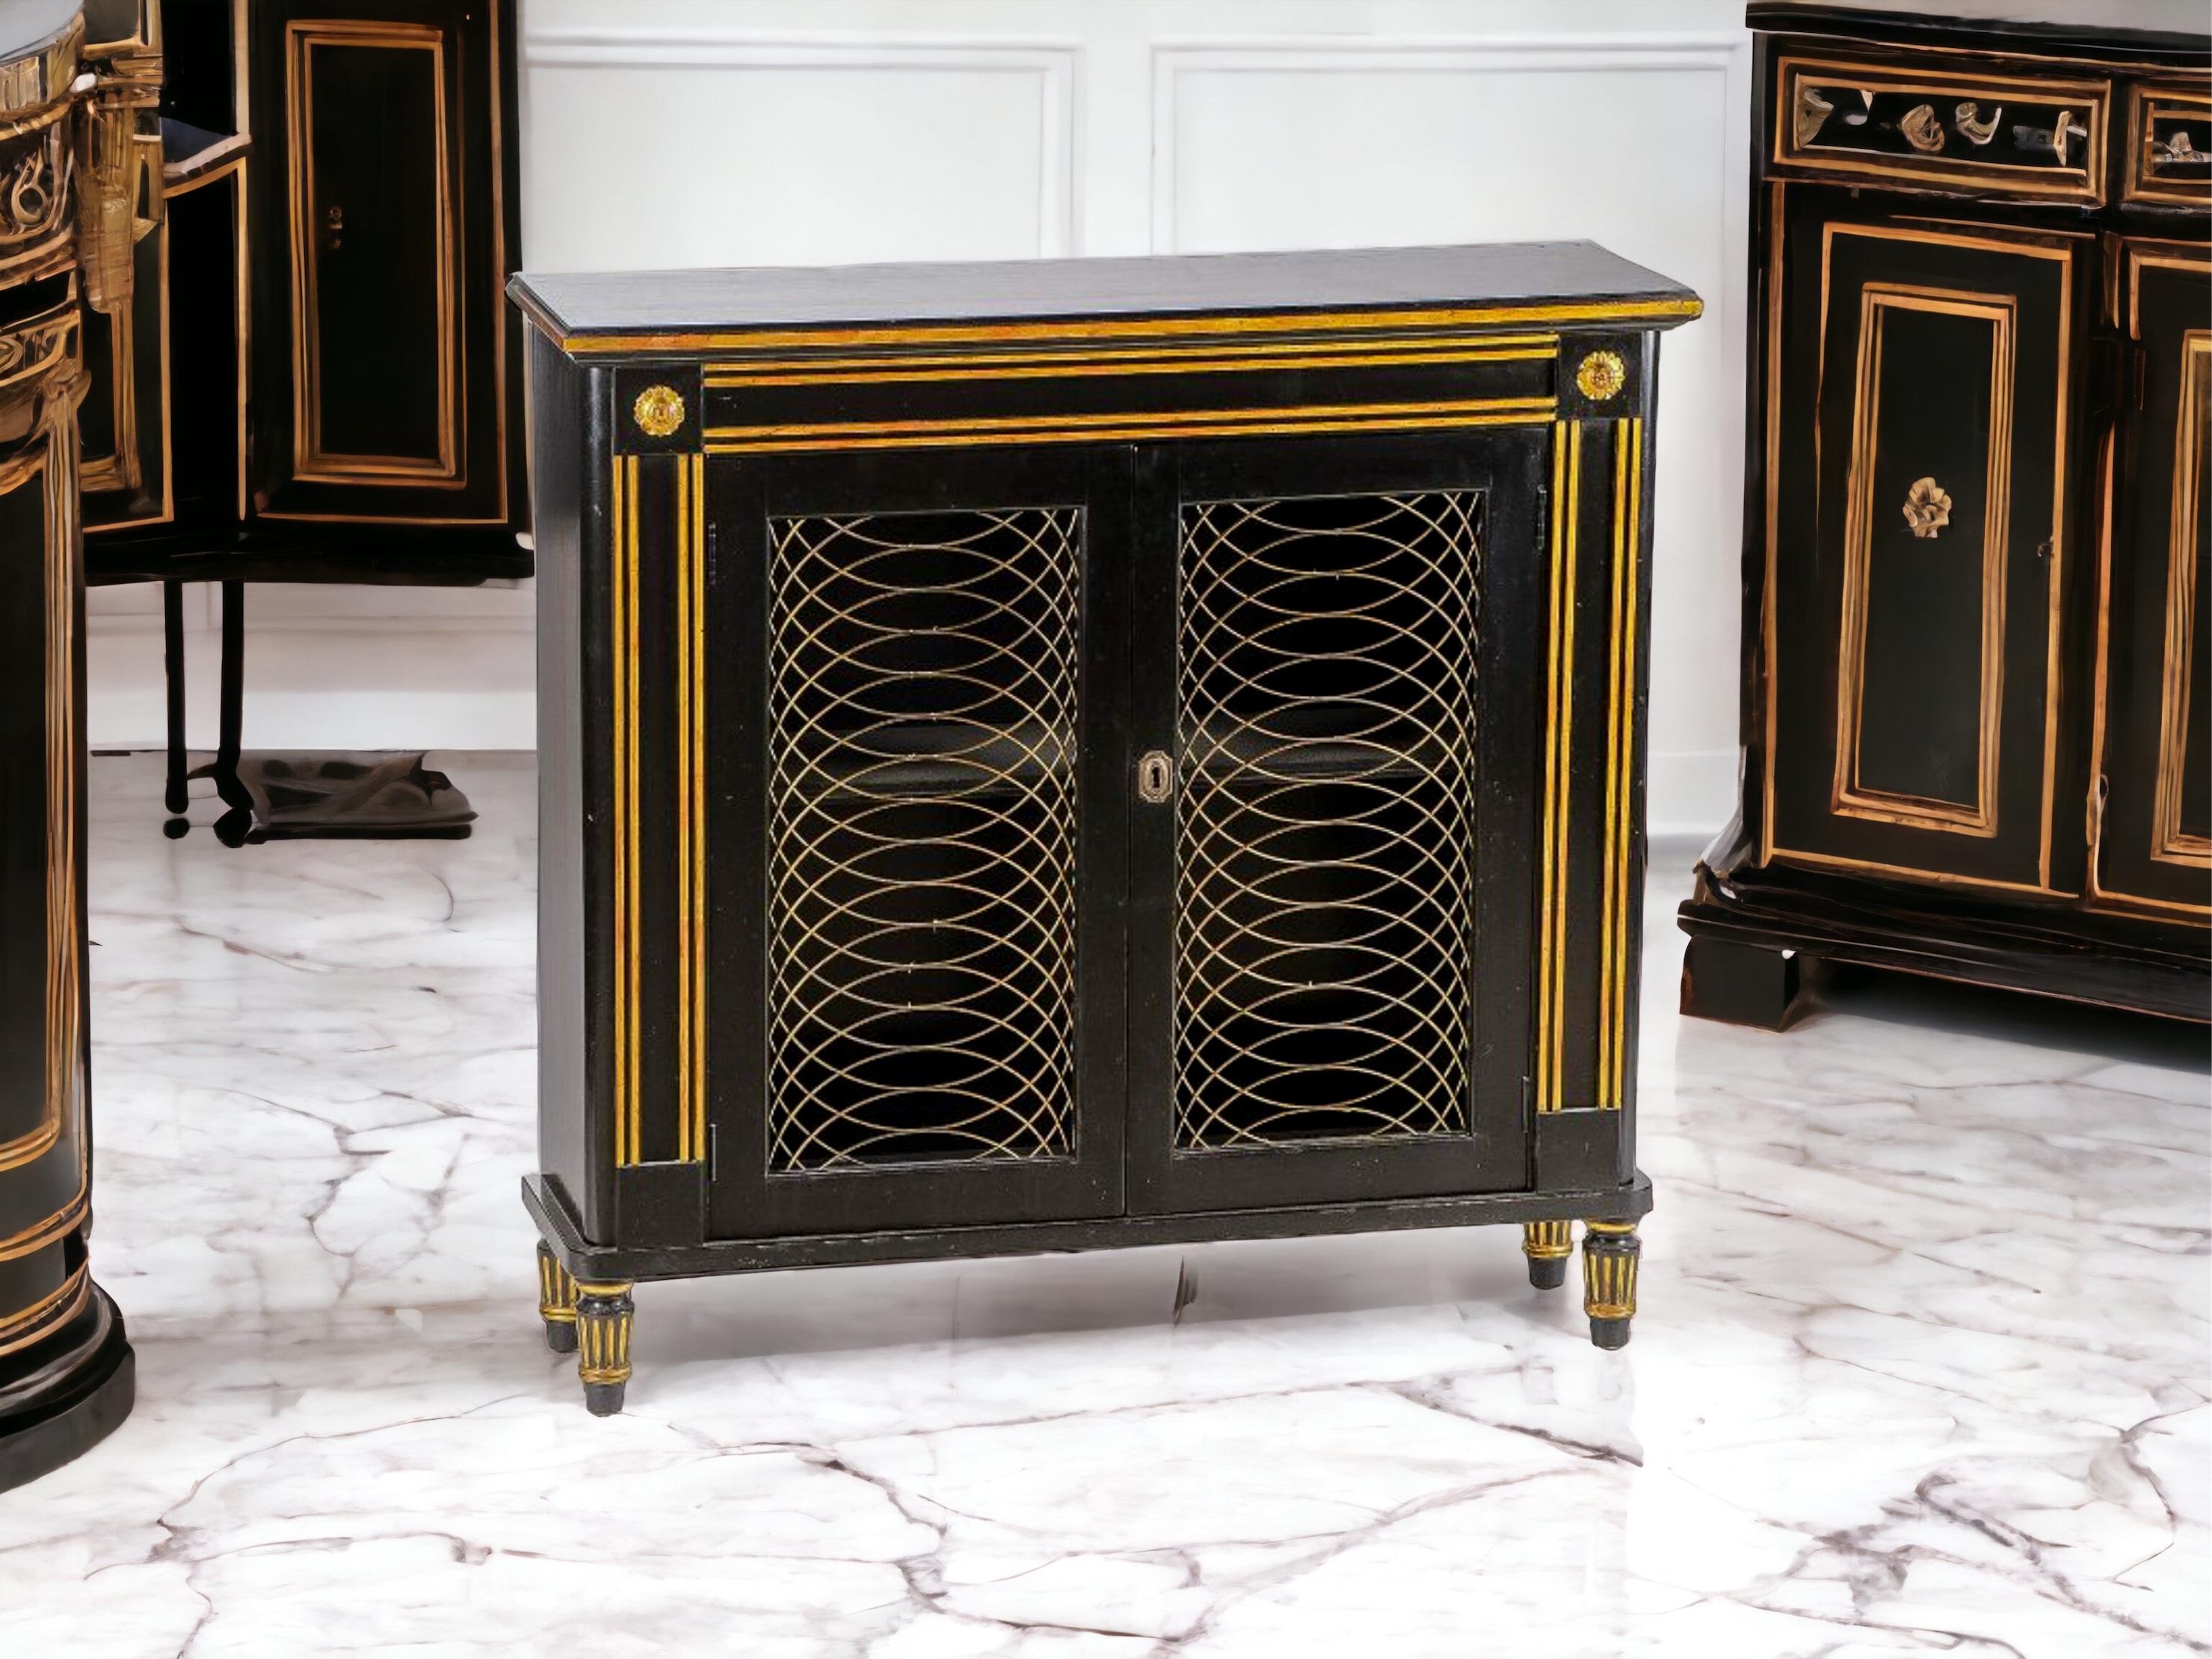 Il s'agit d'une armoire italienne de style Regency datant du milieu du siècle, avec une finition laquée noire et des accents dorés. Il s'ouvre sur une seule étagère. Remarquez les panneaux en relief et les pieds tournés ! Il est sans marque et en